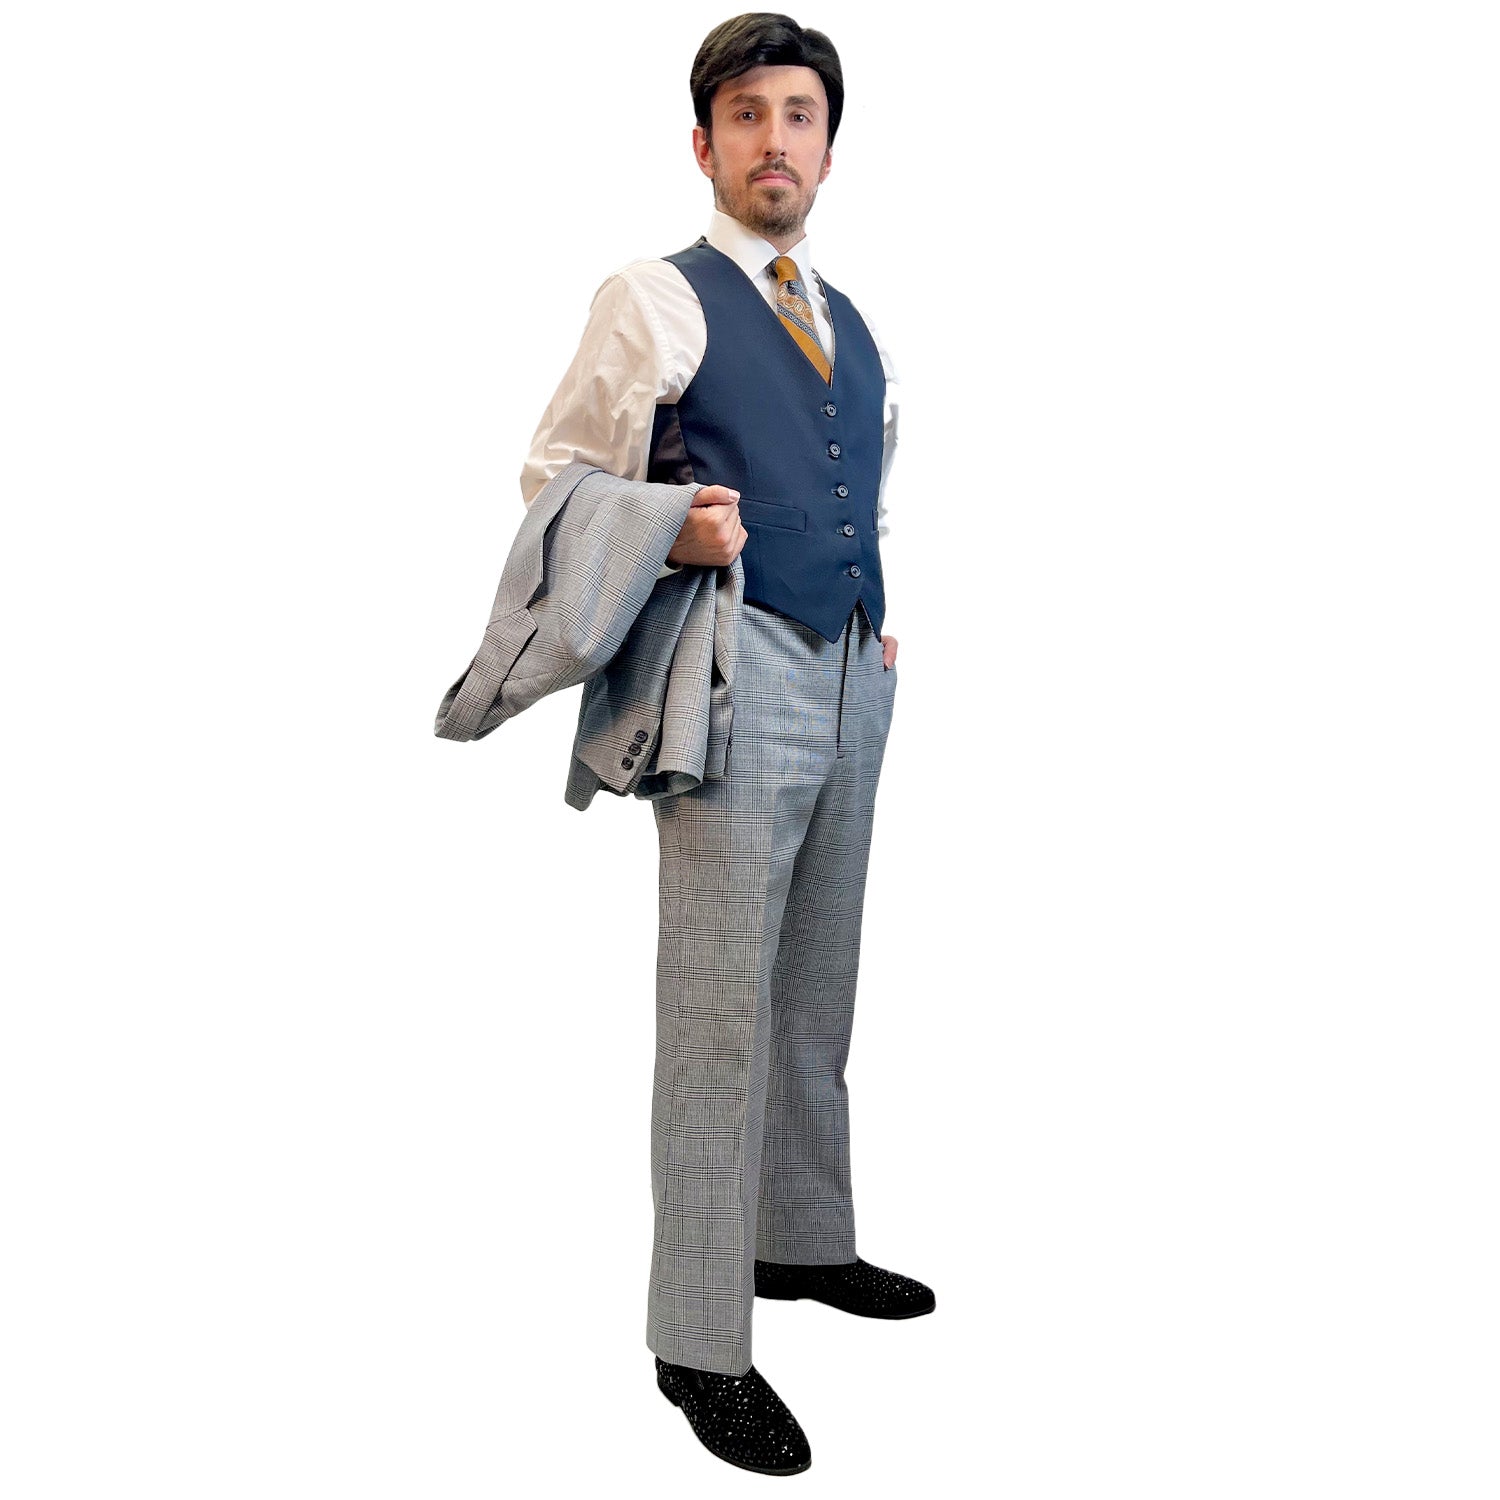 Deluxe 1920’s Dapper Business Men's Suit Adult Costume